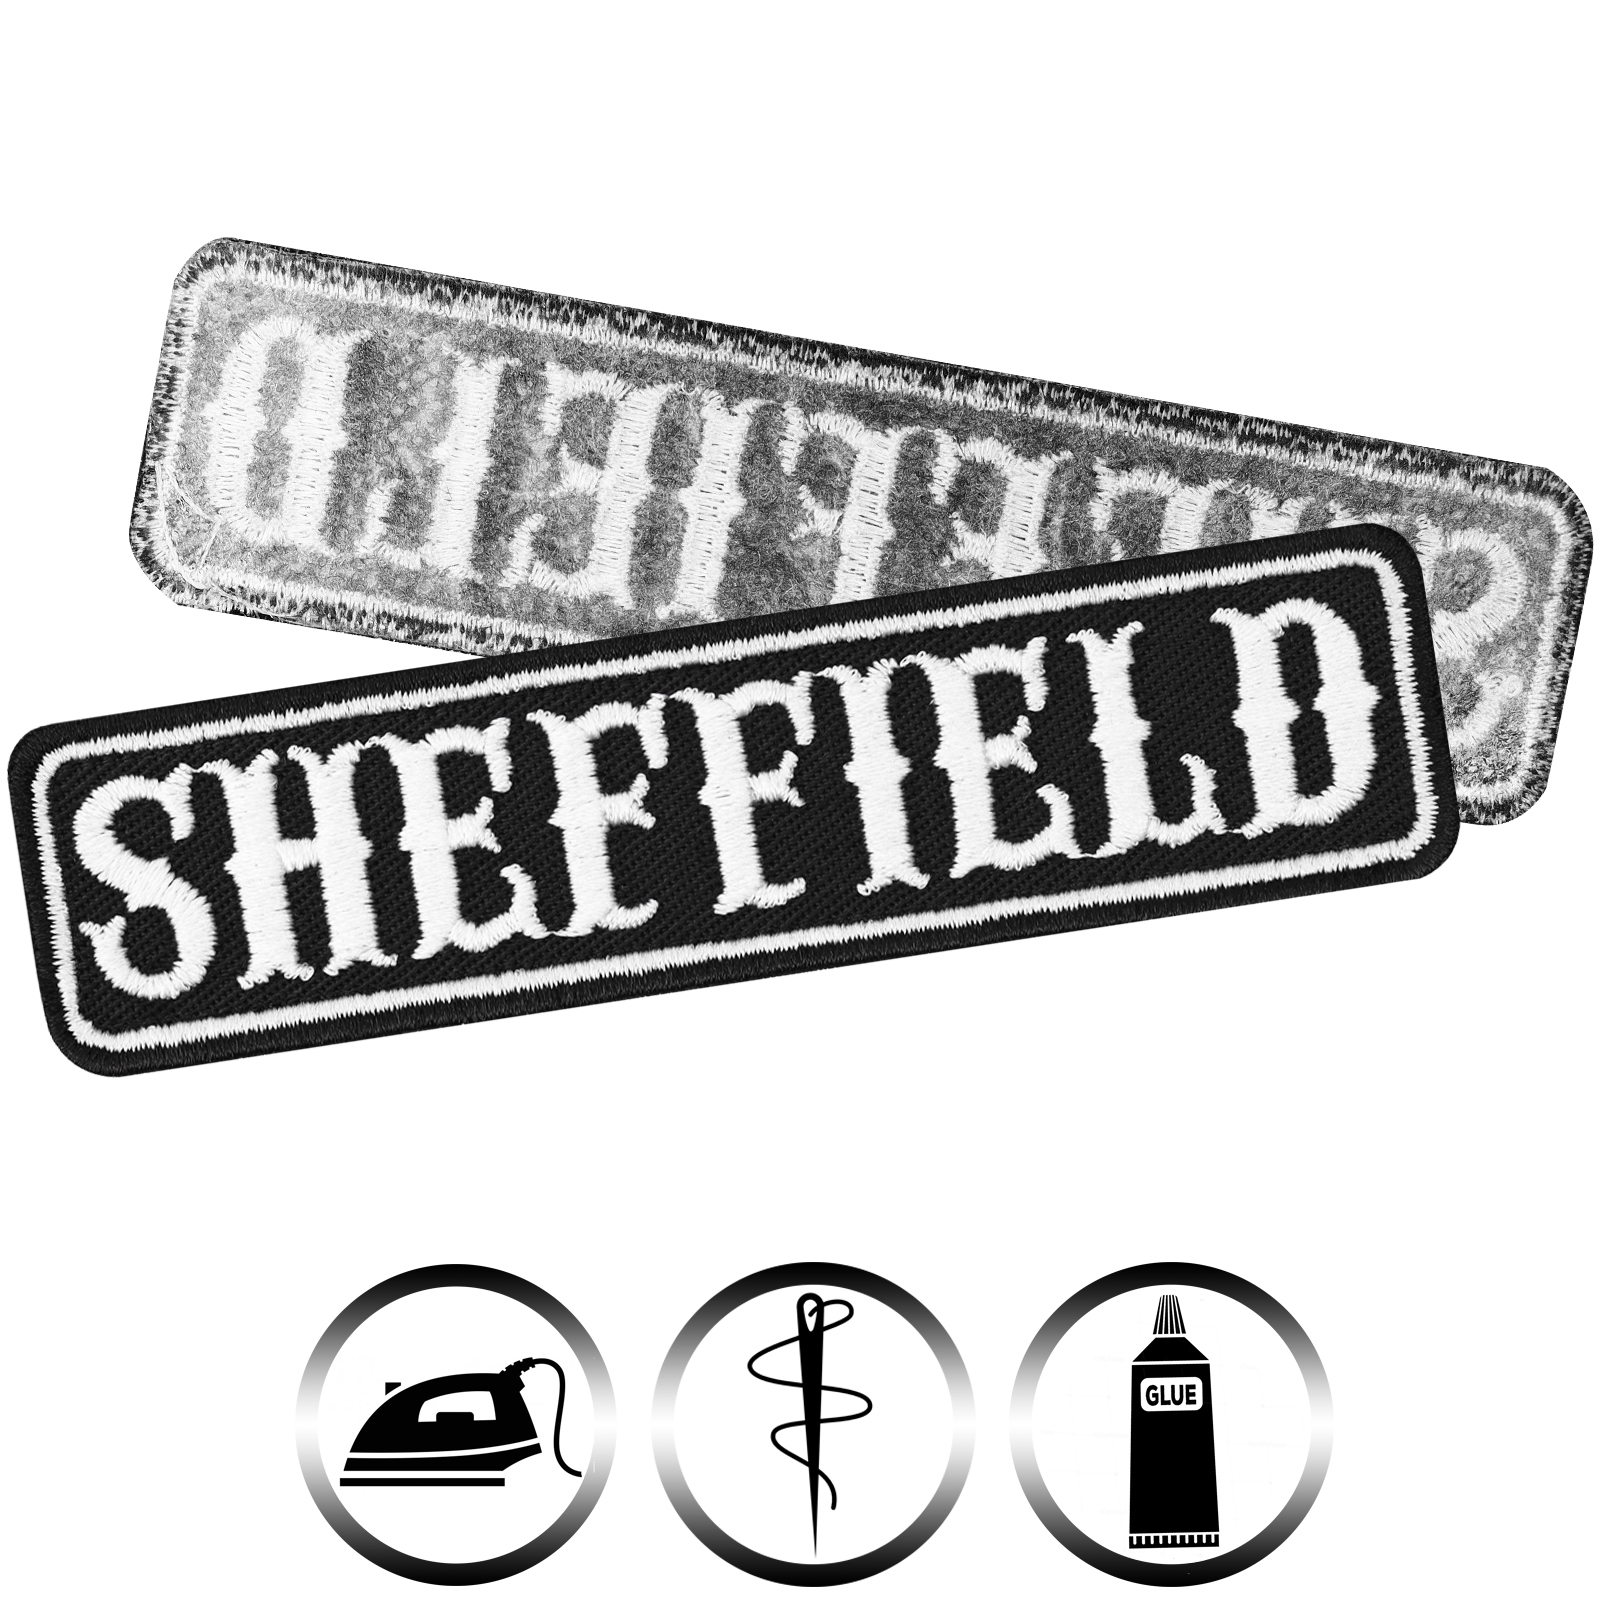 Sheffield - Patch